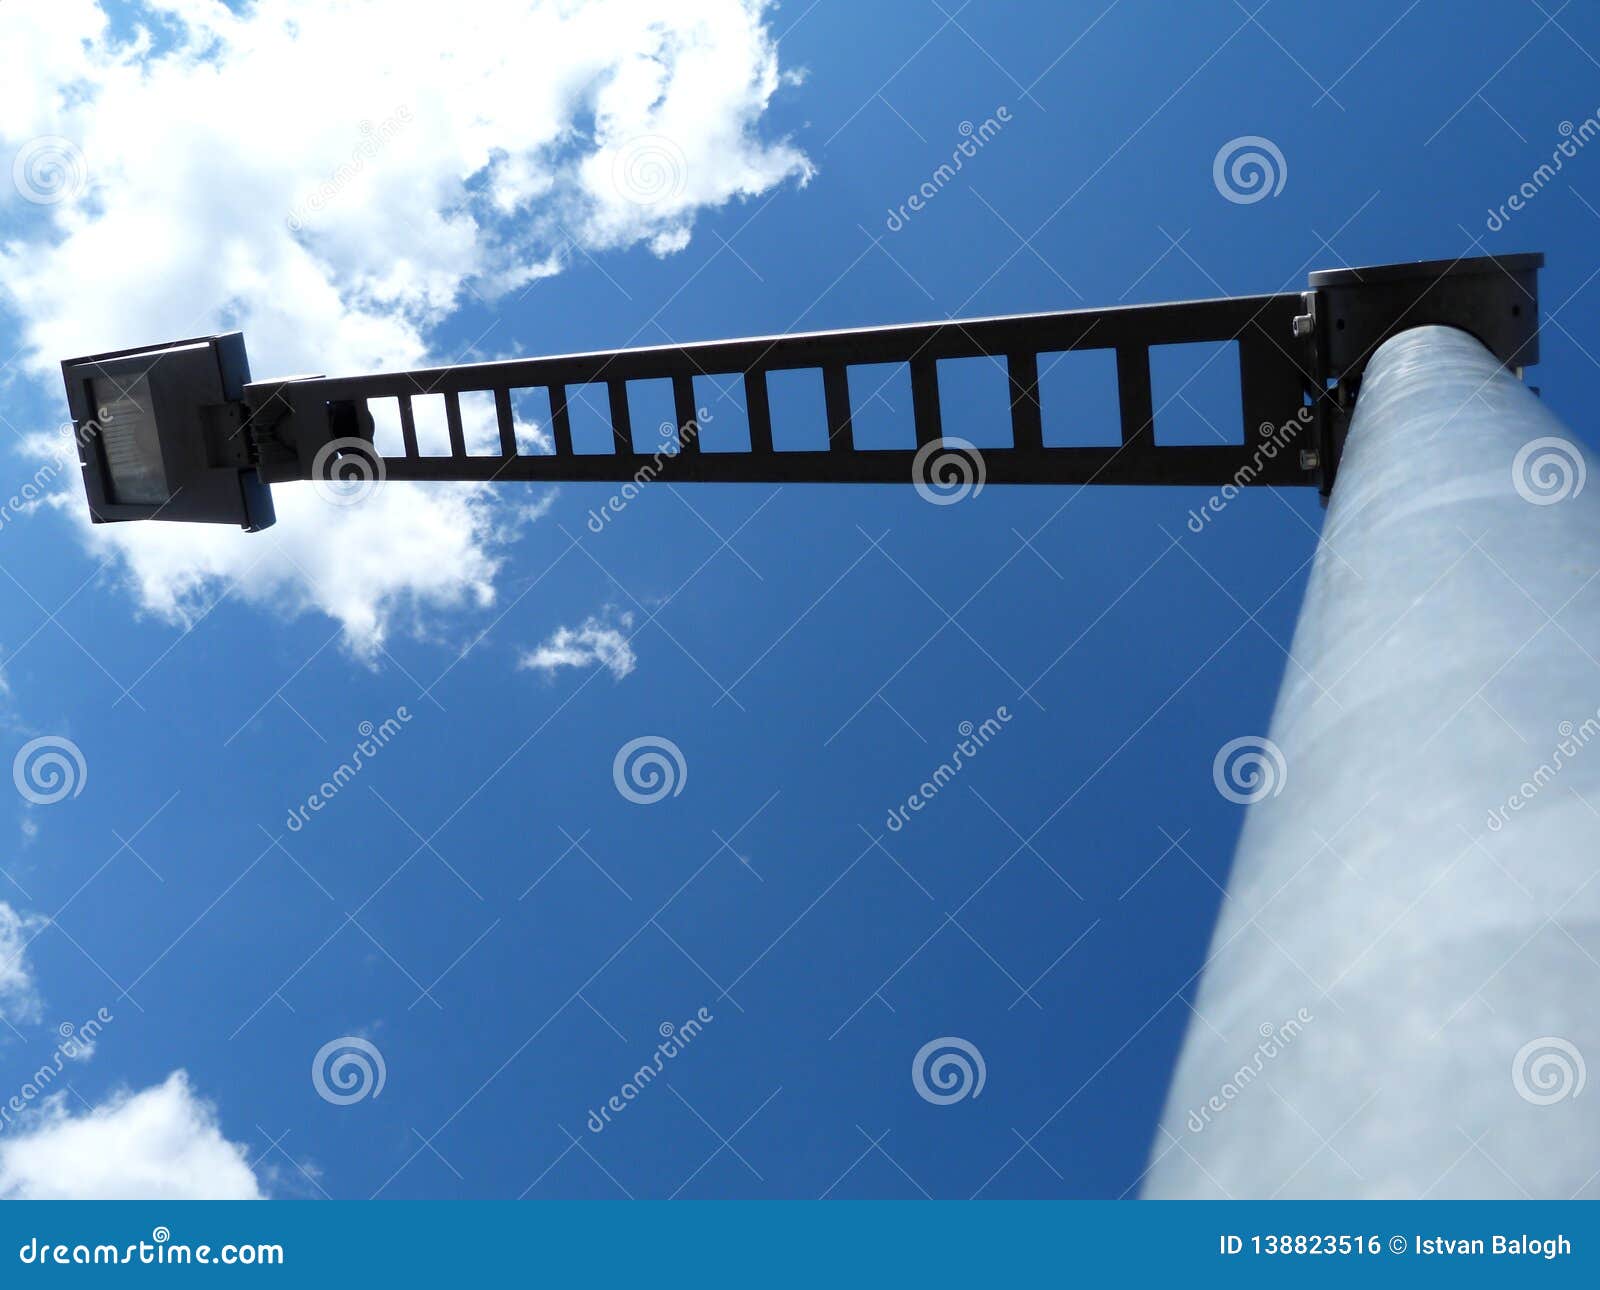 Abstracte mening van moderne vierkante hoofdstraatlantaarn met blauwe hemel in verminderend perspectief de post van het aluminiumlatwerk met regelbaar hoofd het concept blauwe hemel of hemel is de grens halogeen gloeilamp voor juist licht niveau of Lux van straatverlichting